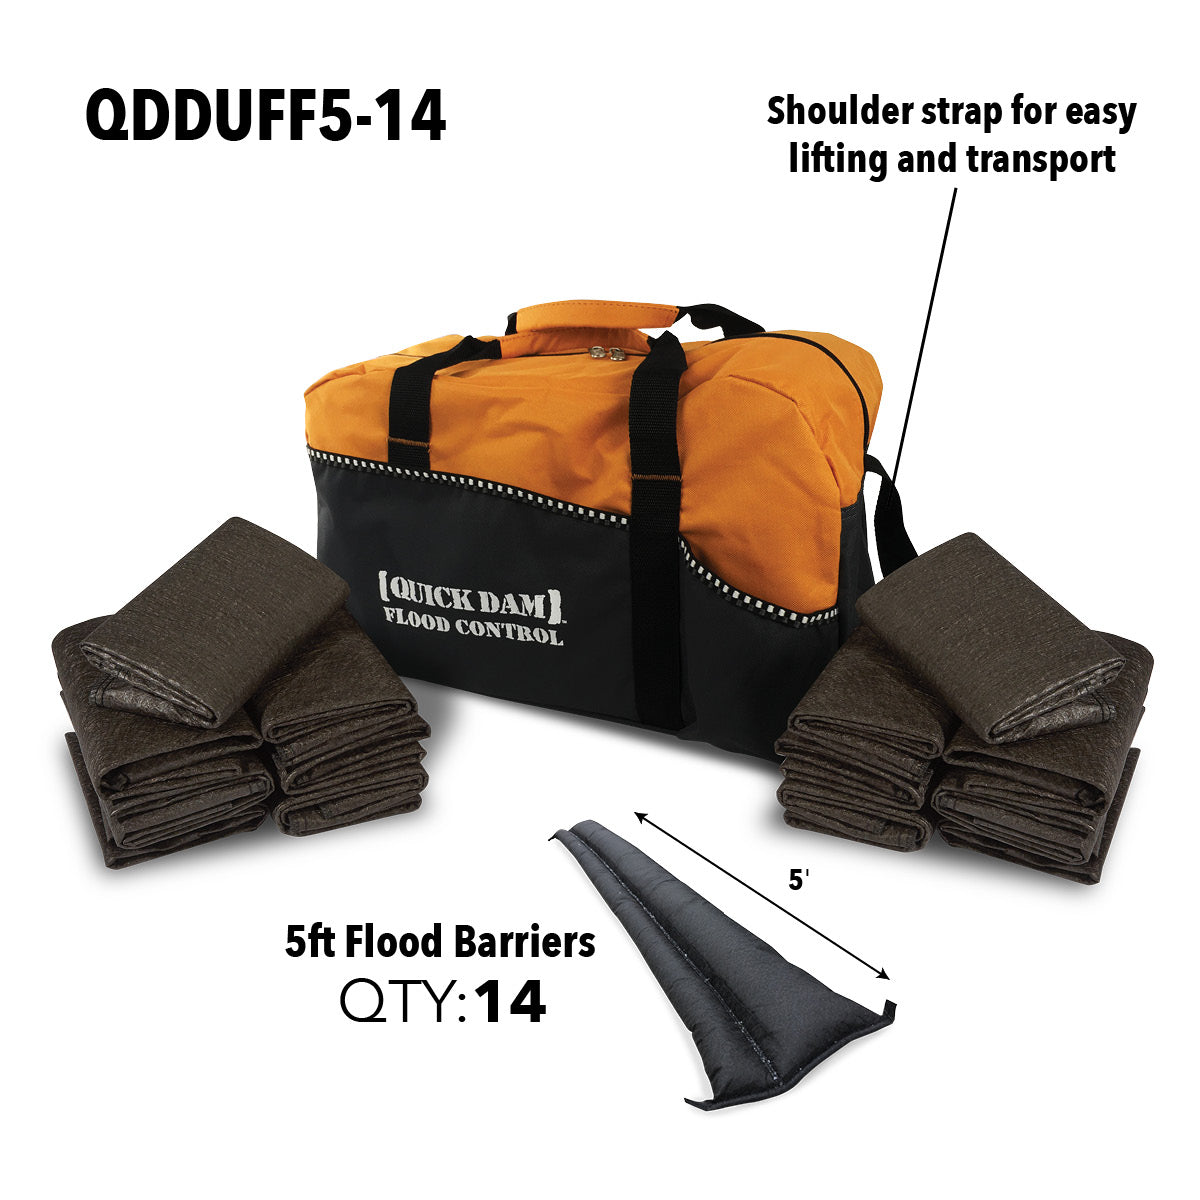 QDDUFF5-14 Duffel Bag Kit